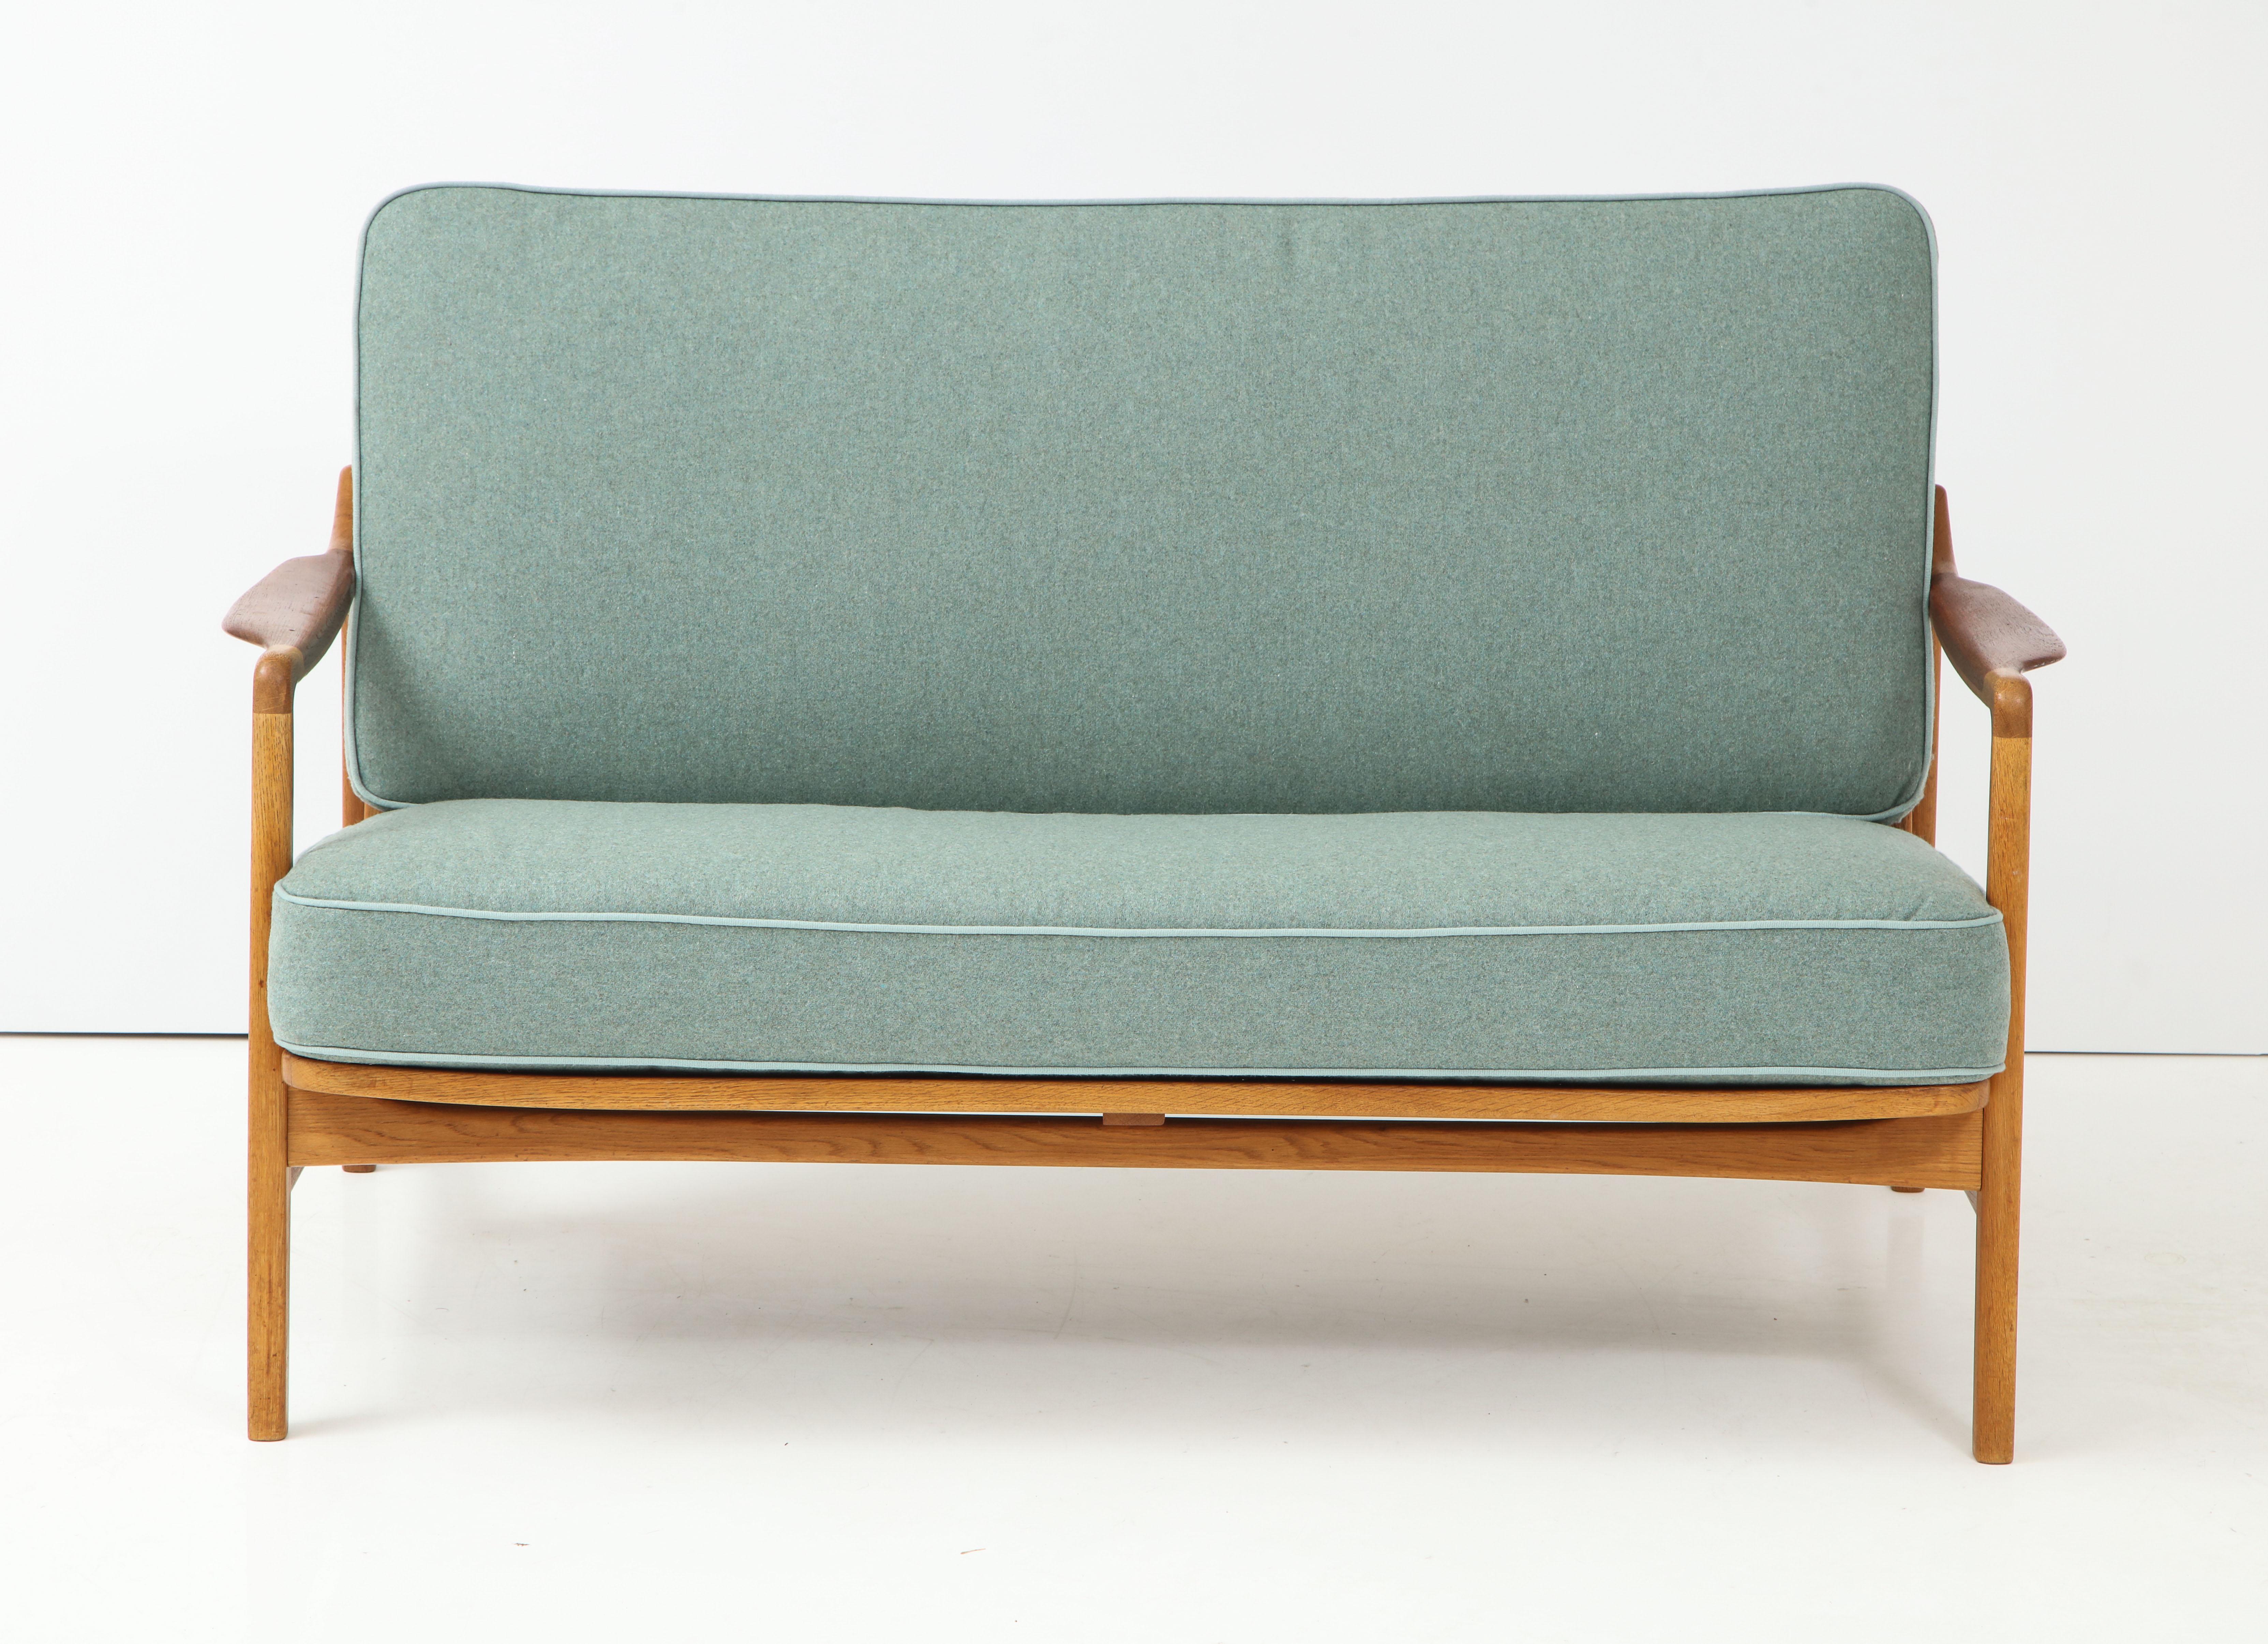 Ein dänisches Design-Sofa aus Teak und Eiche für zwei Personen, entworfen von Tove und Edvard Kindt-Larsen, ca. 1950er Jahre, Modell 117. Die Couch kann ohne Werkzeug zerlegt werden. Neu gepolstert mit einem Wollbezug. Schöne Patina.
   